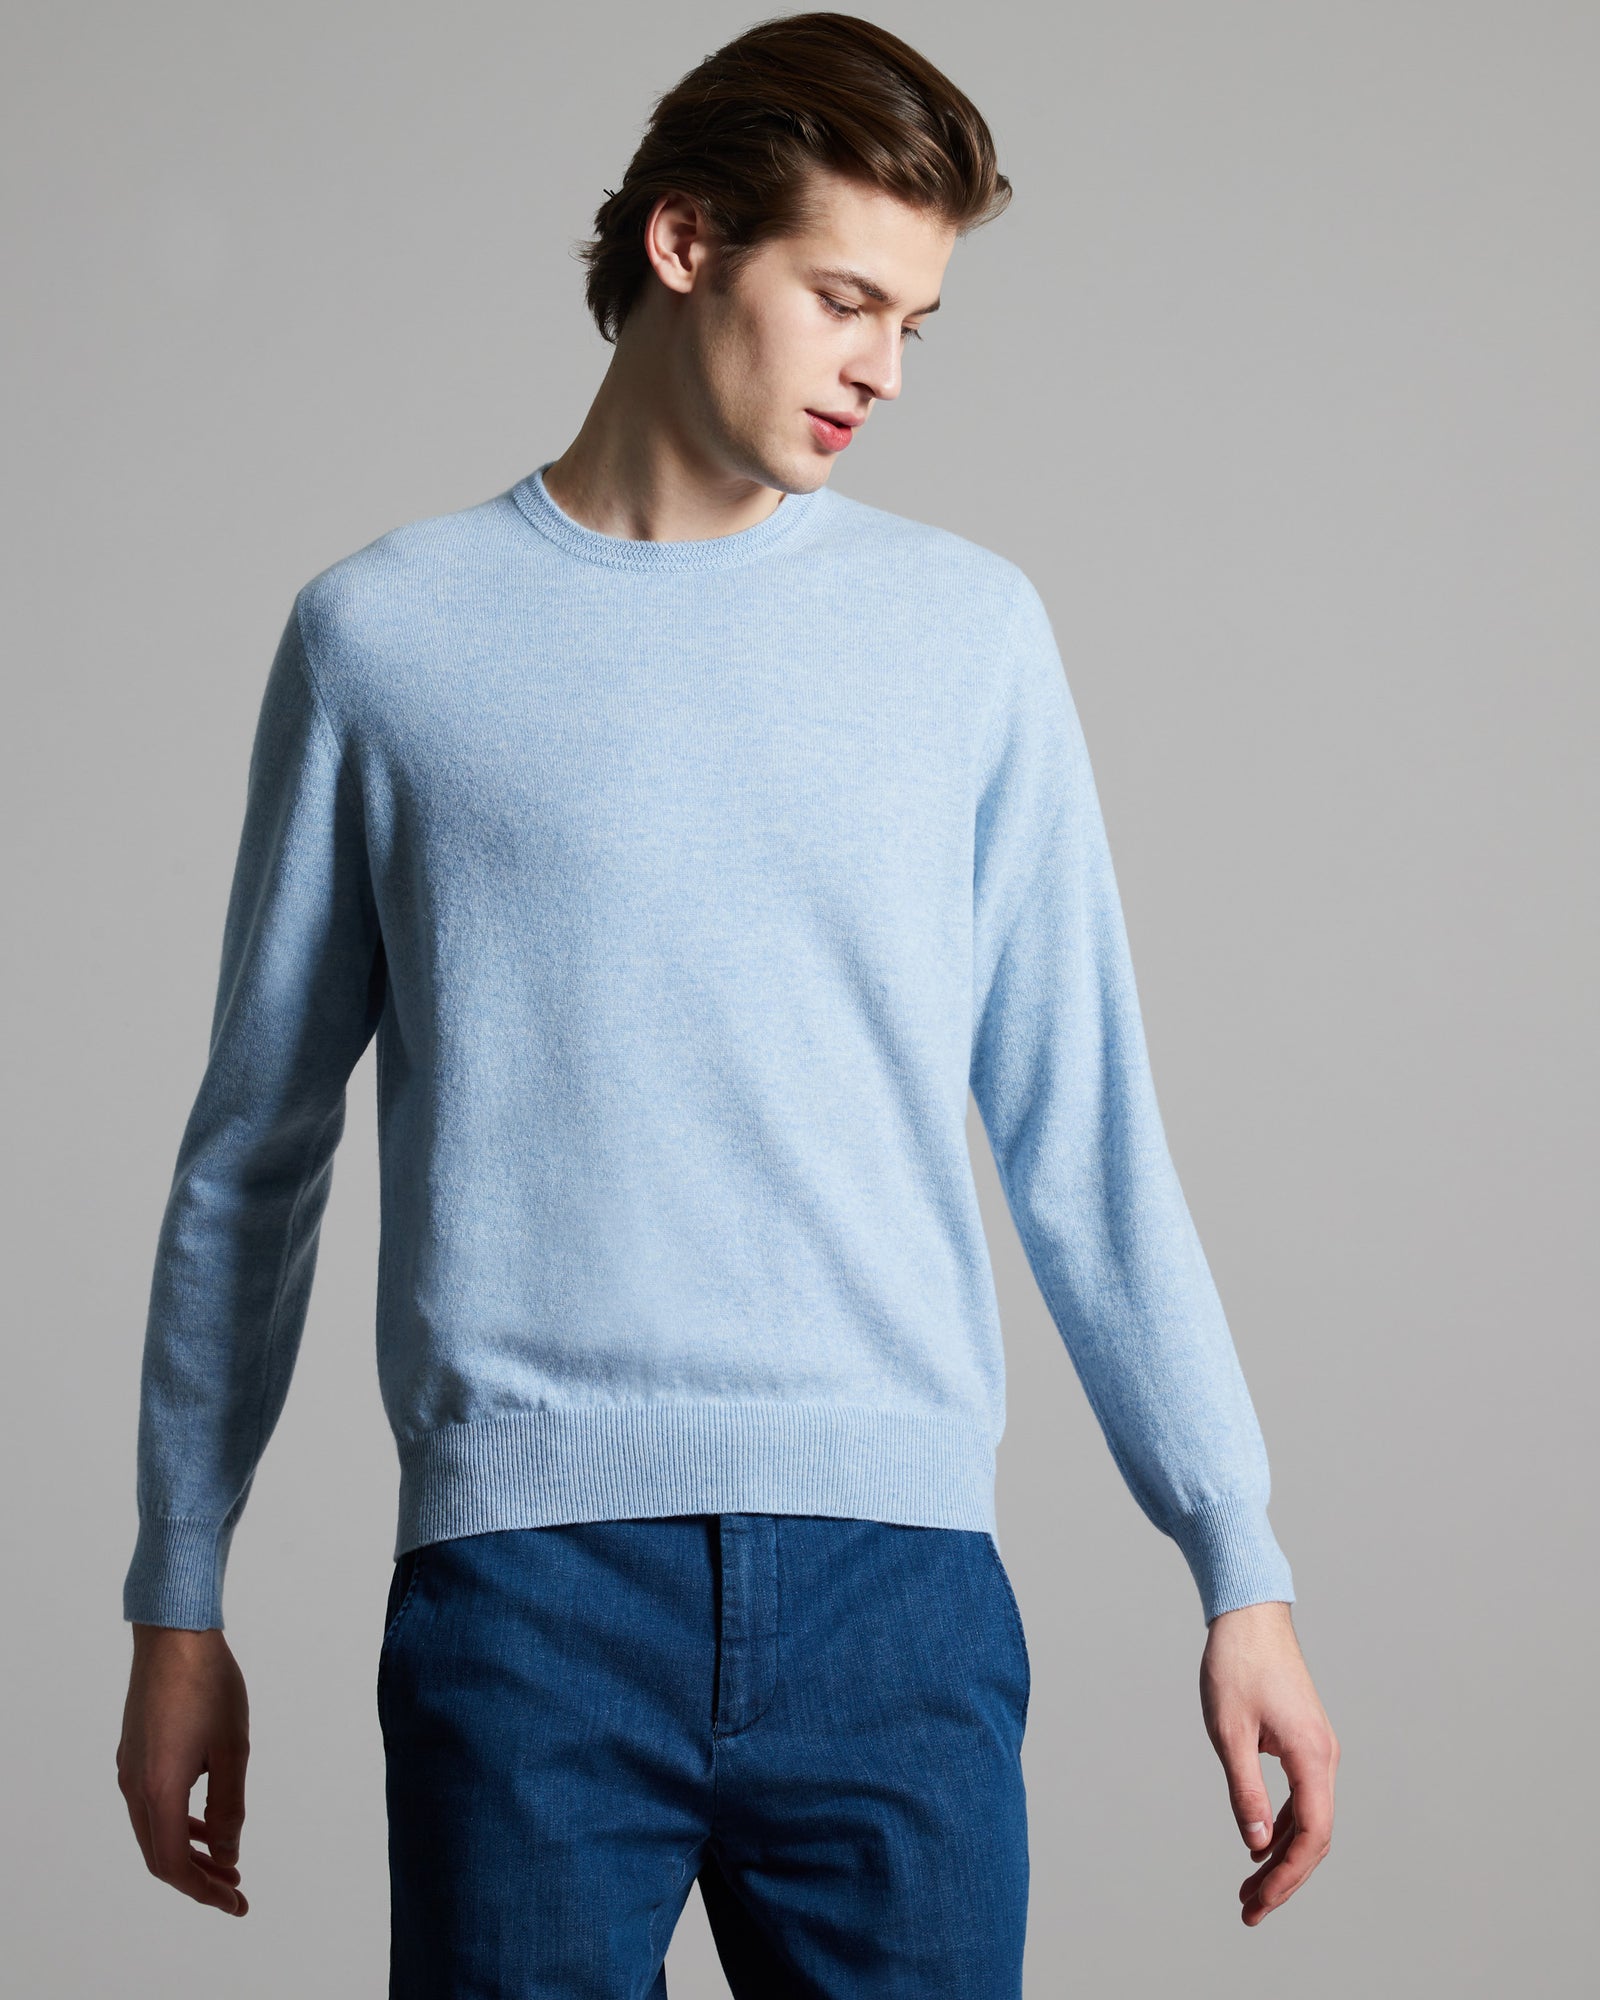 Azure mélange kid cashmere round-neck sweater